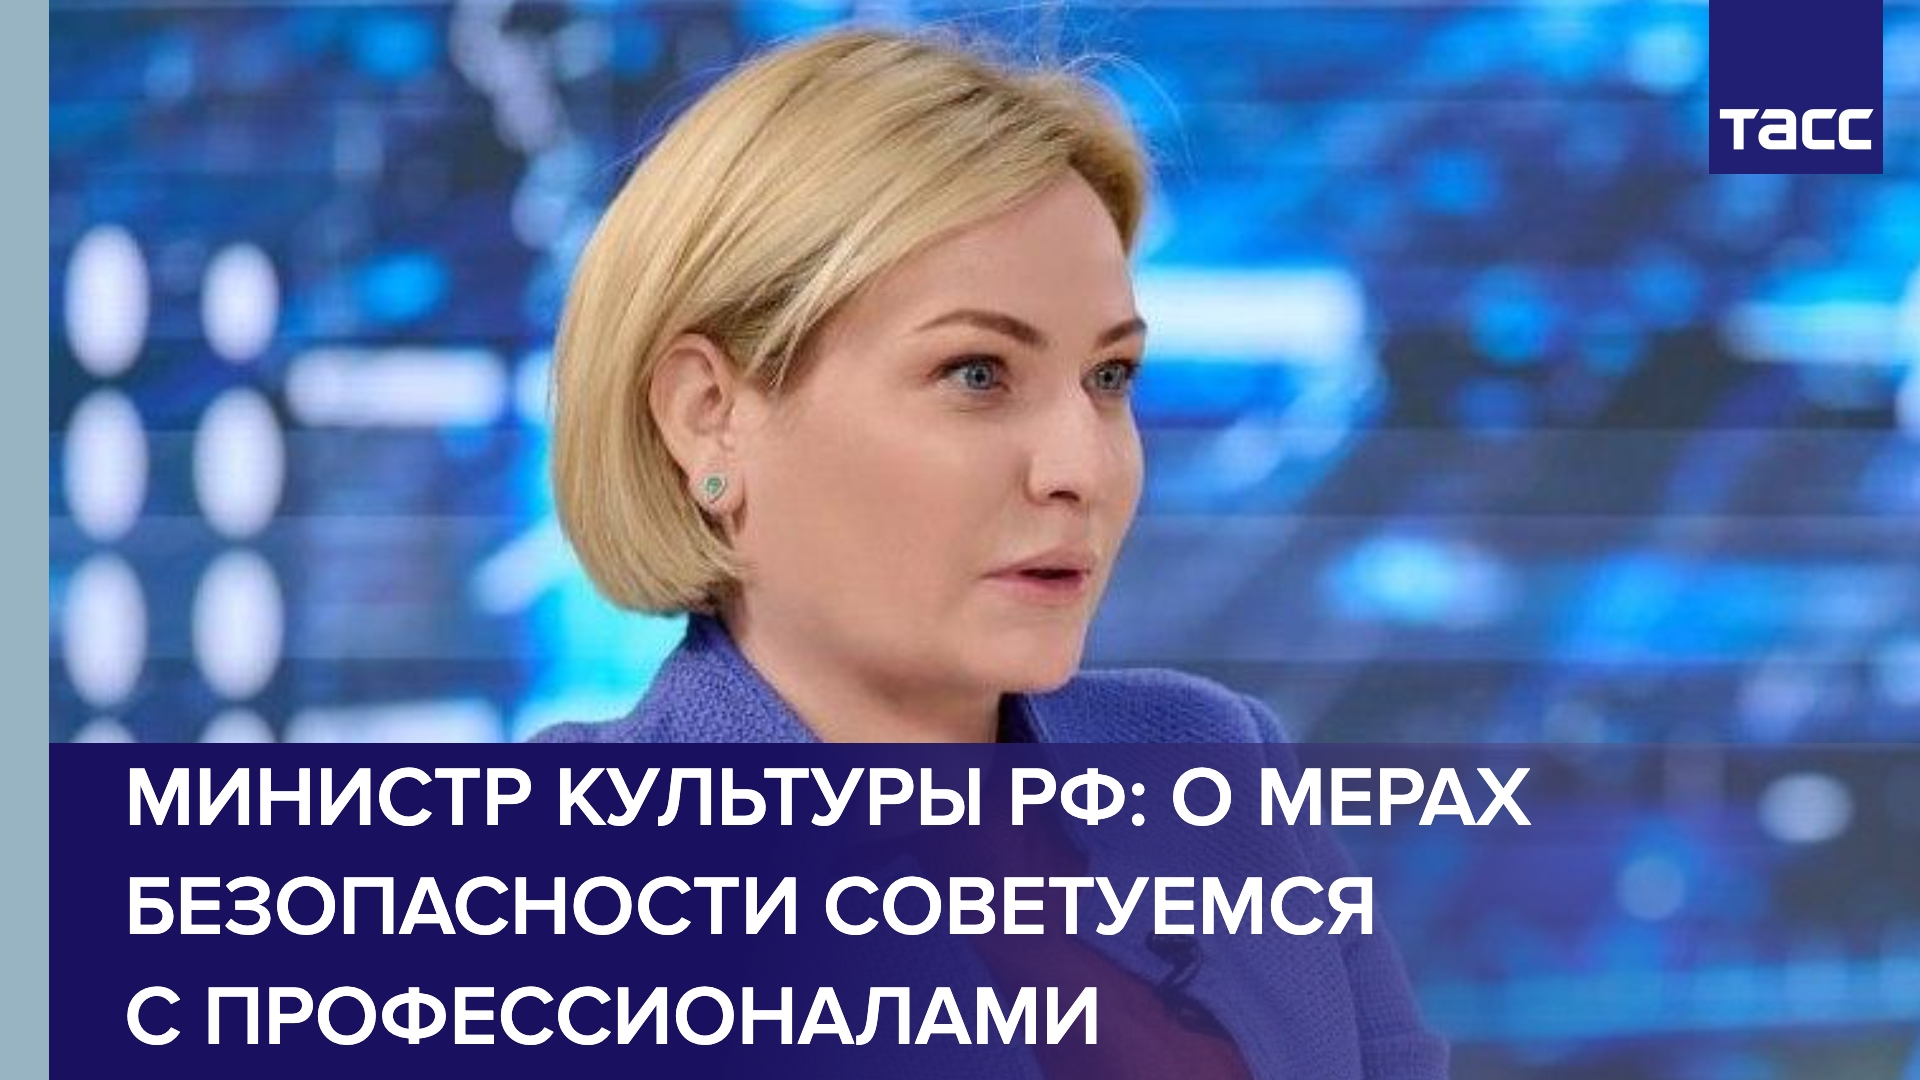 Министр культуры РФ Любимова дала эксклюзивное интервью ТАСС